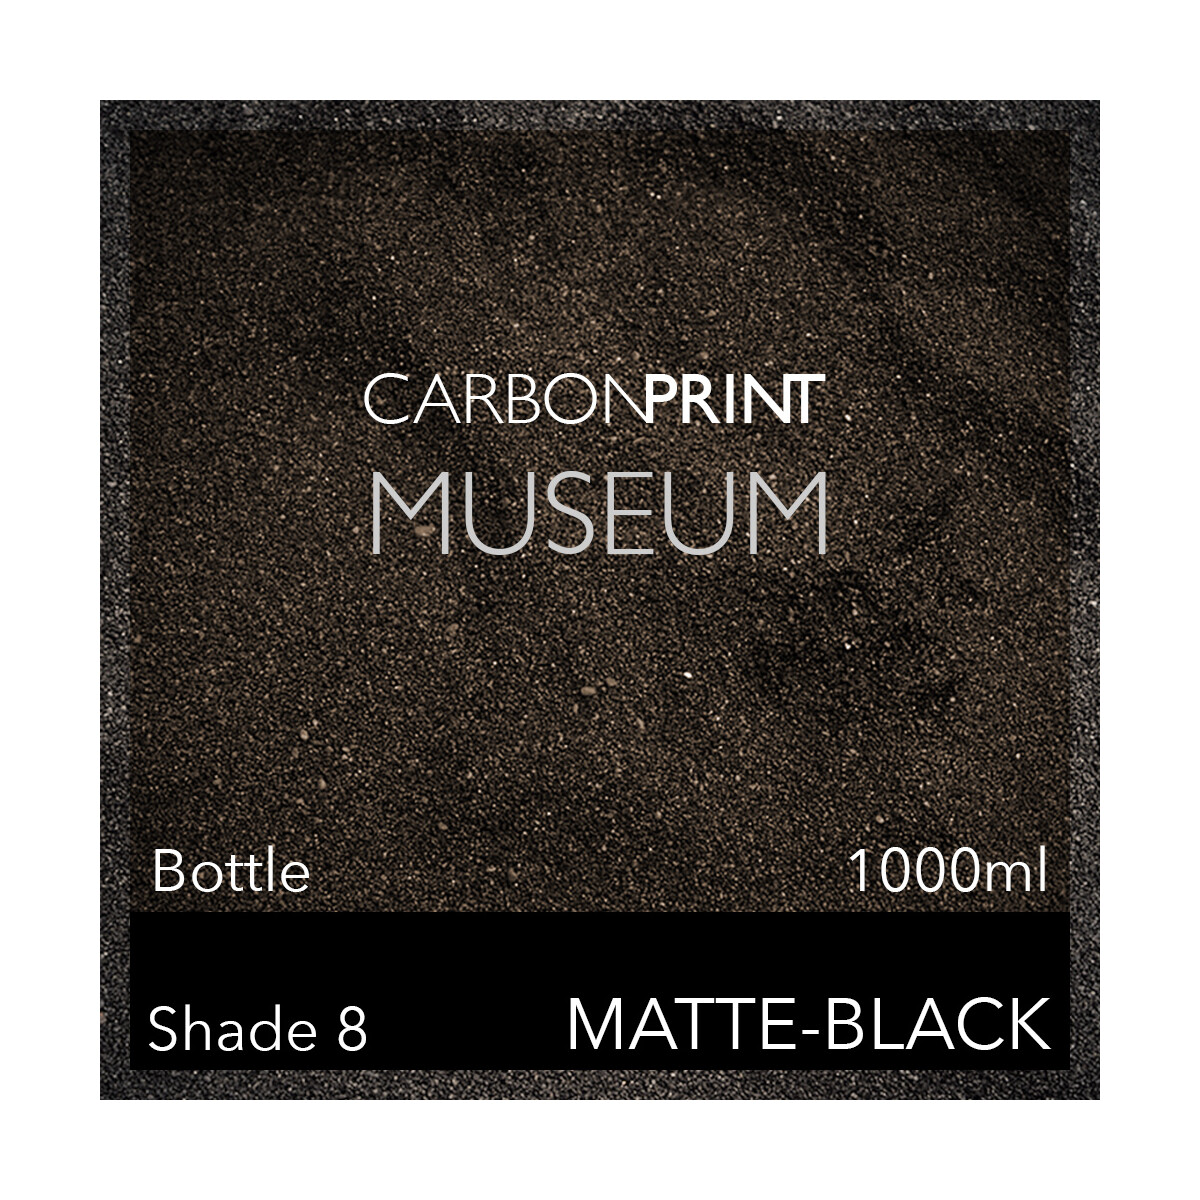 Carbonprint Museum Bottle Position K 1000ml